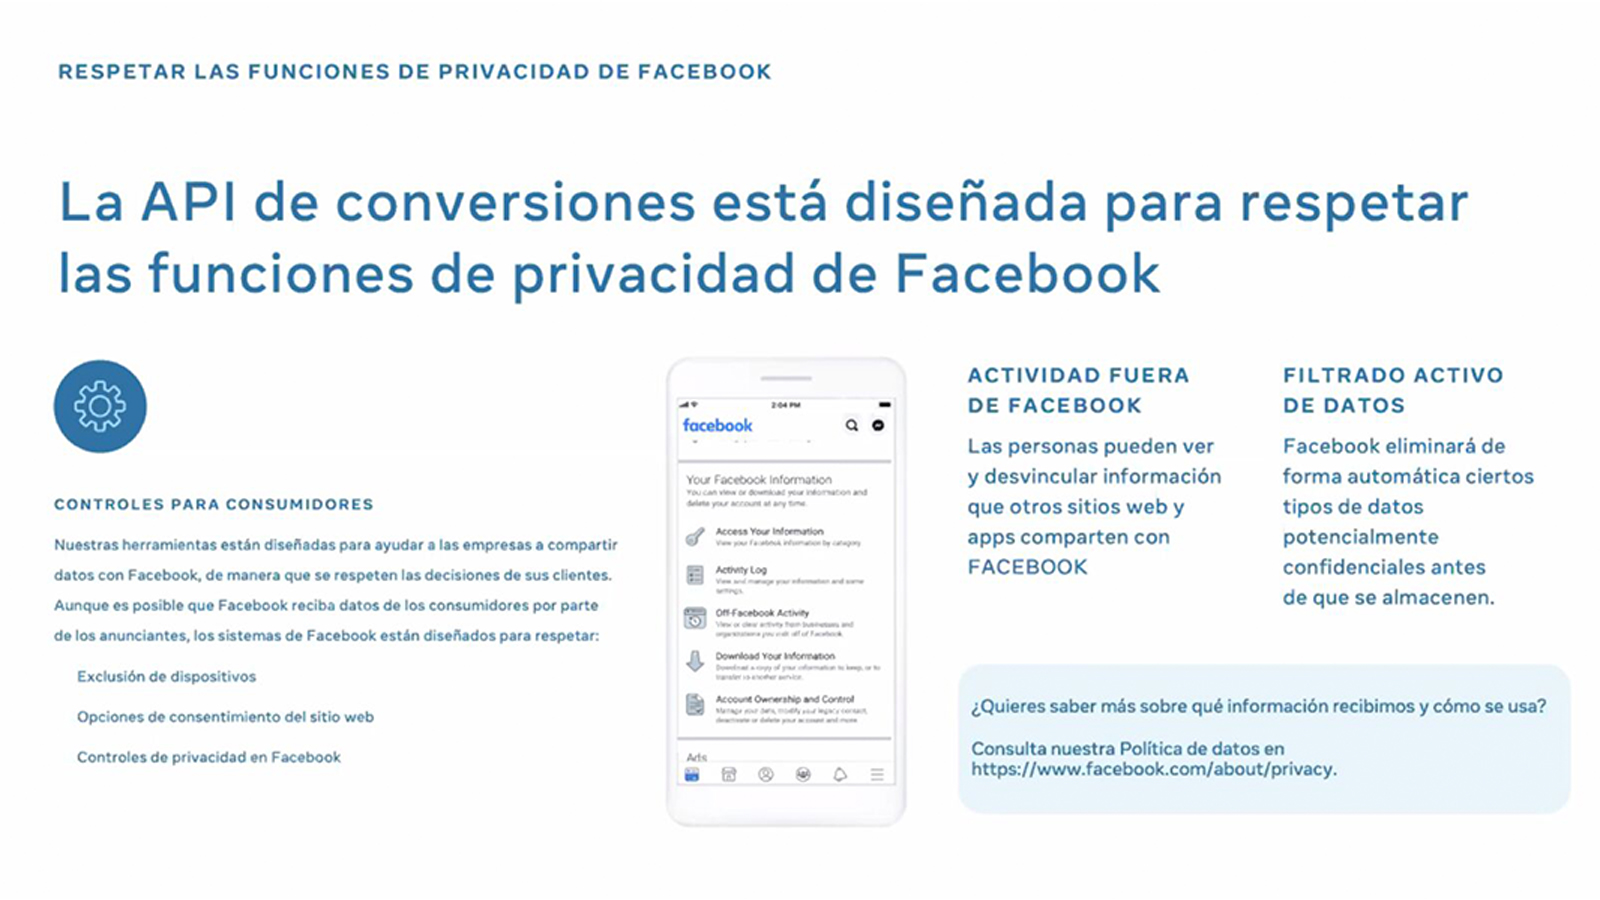 La API de conversiones, pensada para respetar la privacidad en Facebook